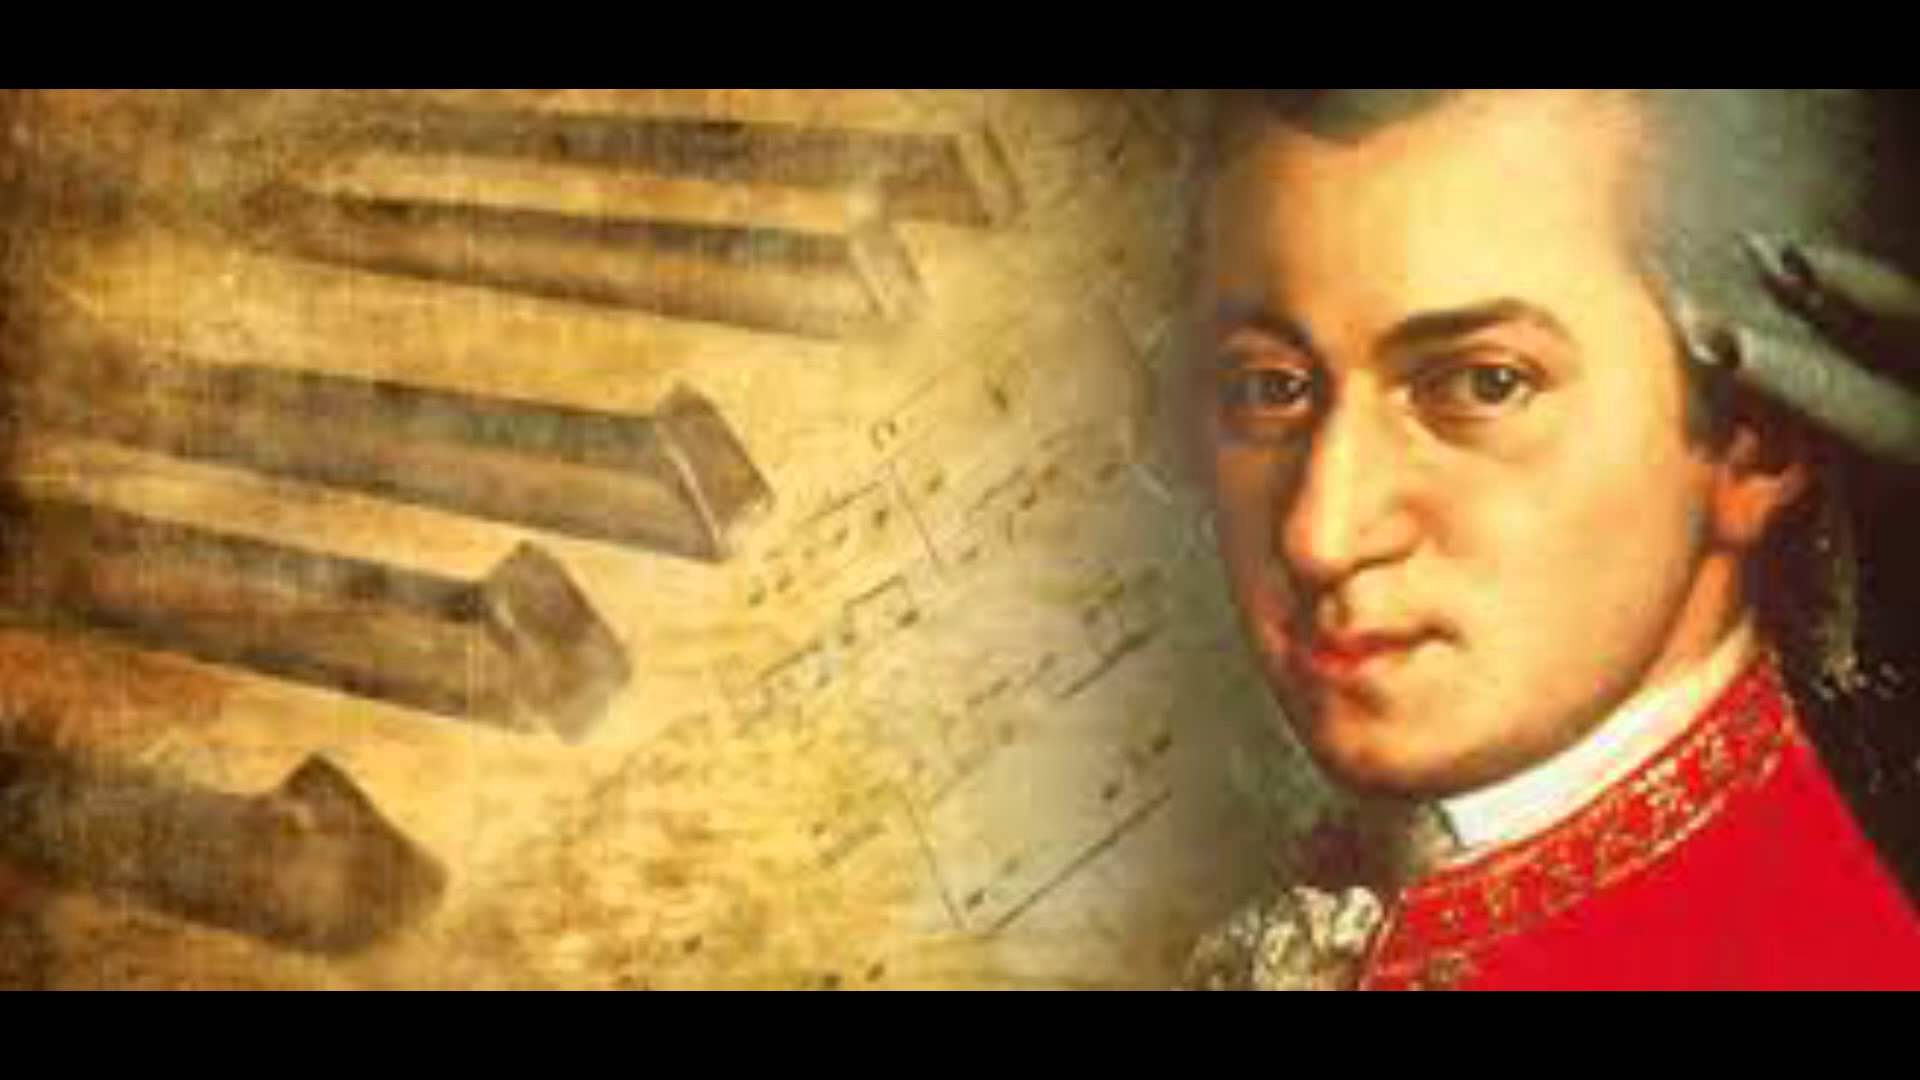 دانلود عکس ساده آهنگساز معروف اتریشی به نام موتسارت